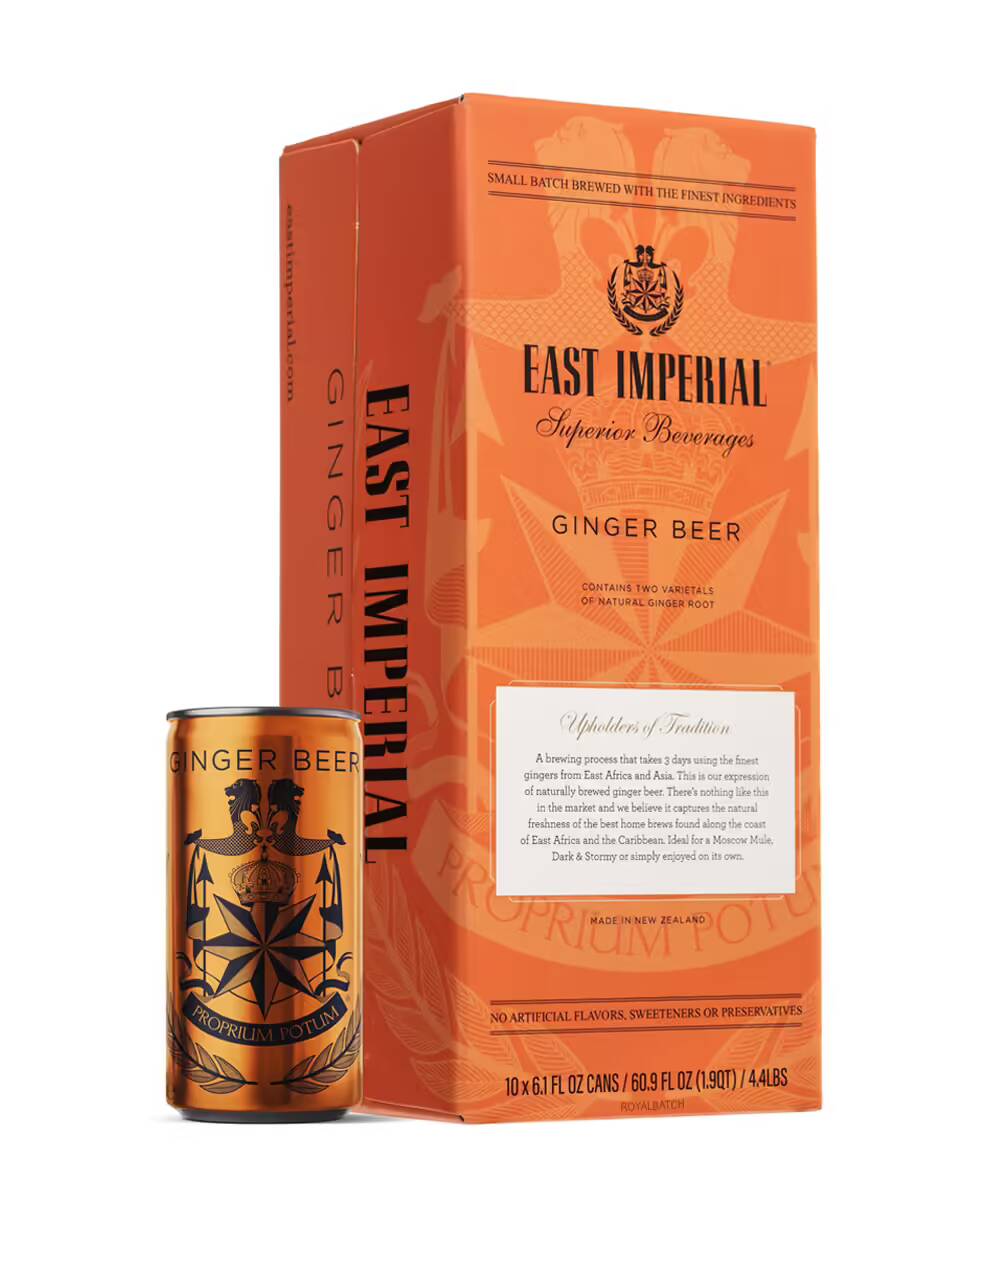 East Imperial Superior Beverages Ginger Beer (10 PACK) 6.1 FL OZ CANS